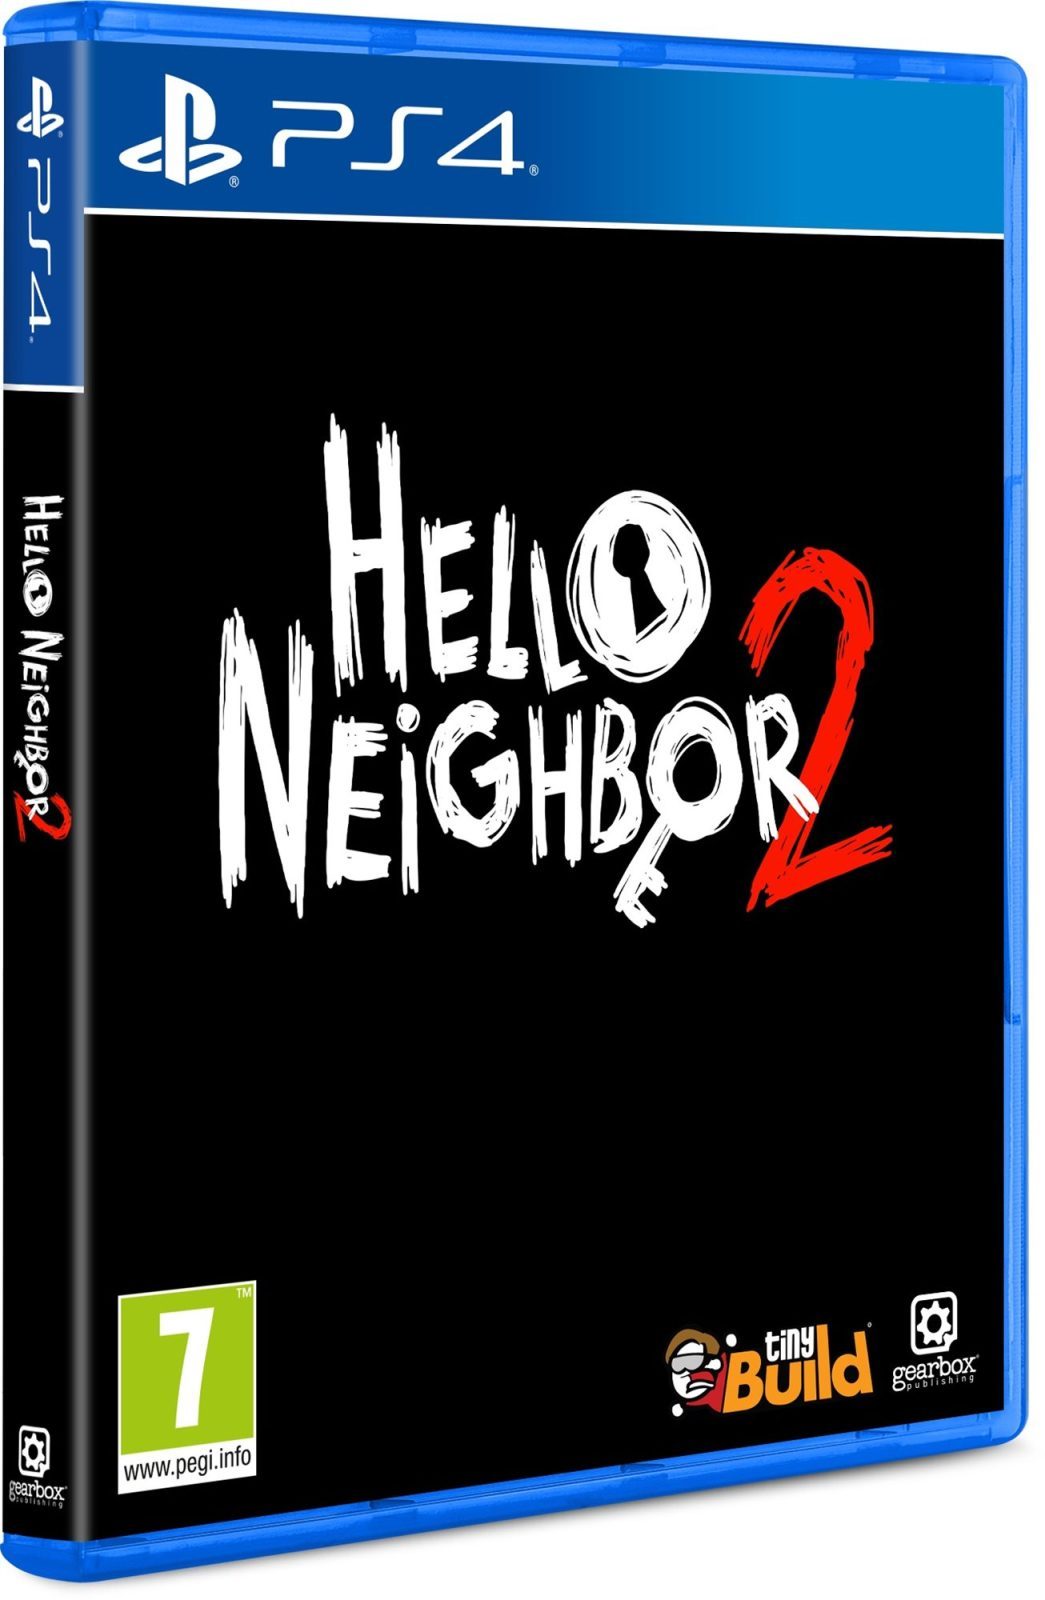 Konzol játék Hello Neighbor 2 - PS4